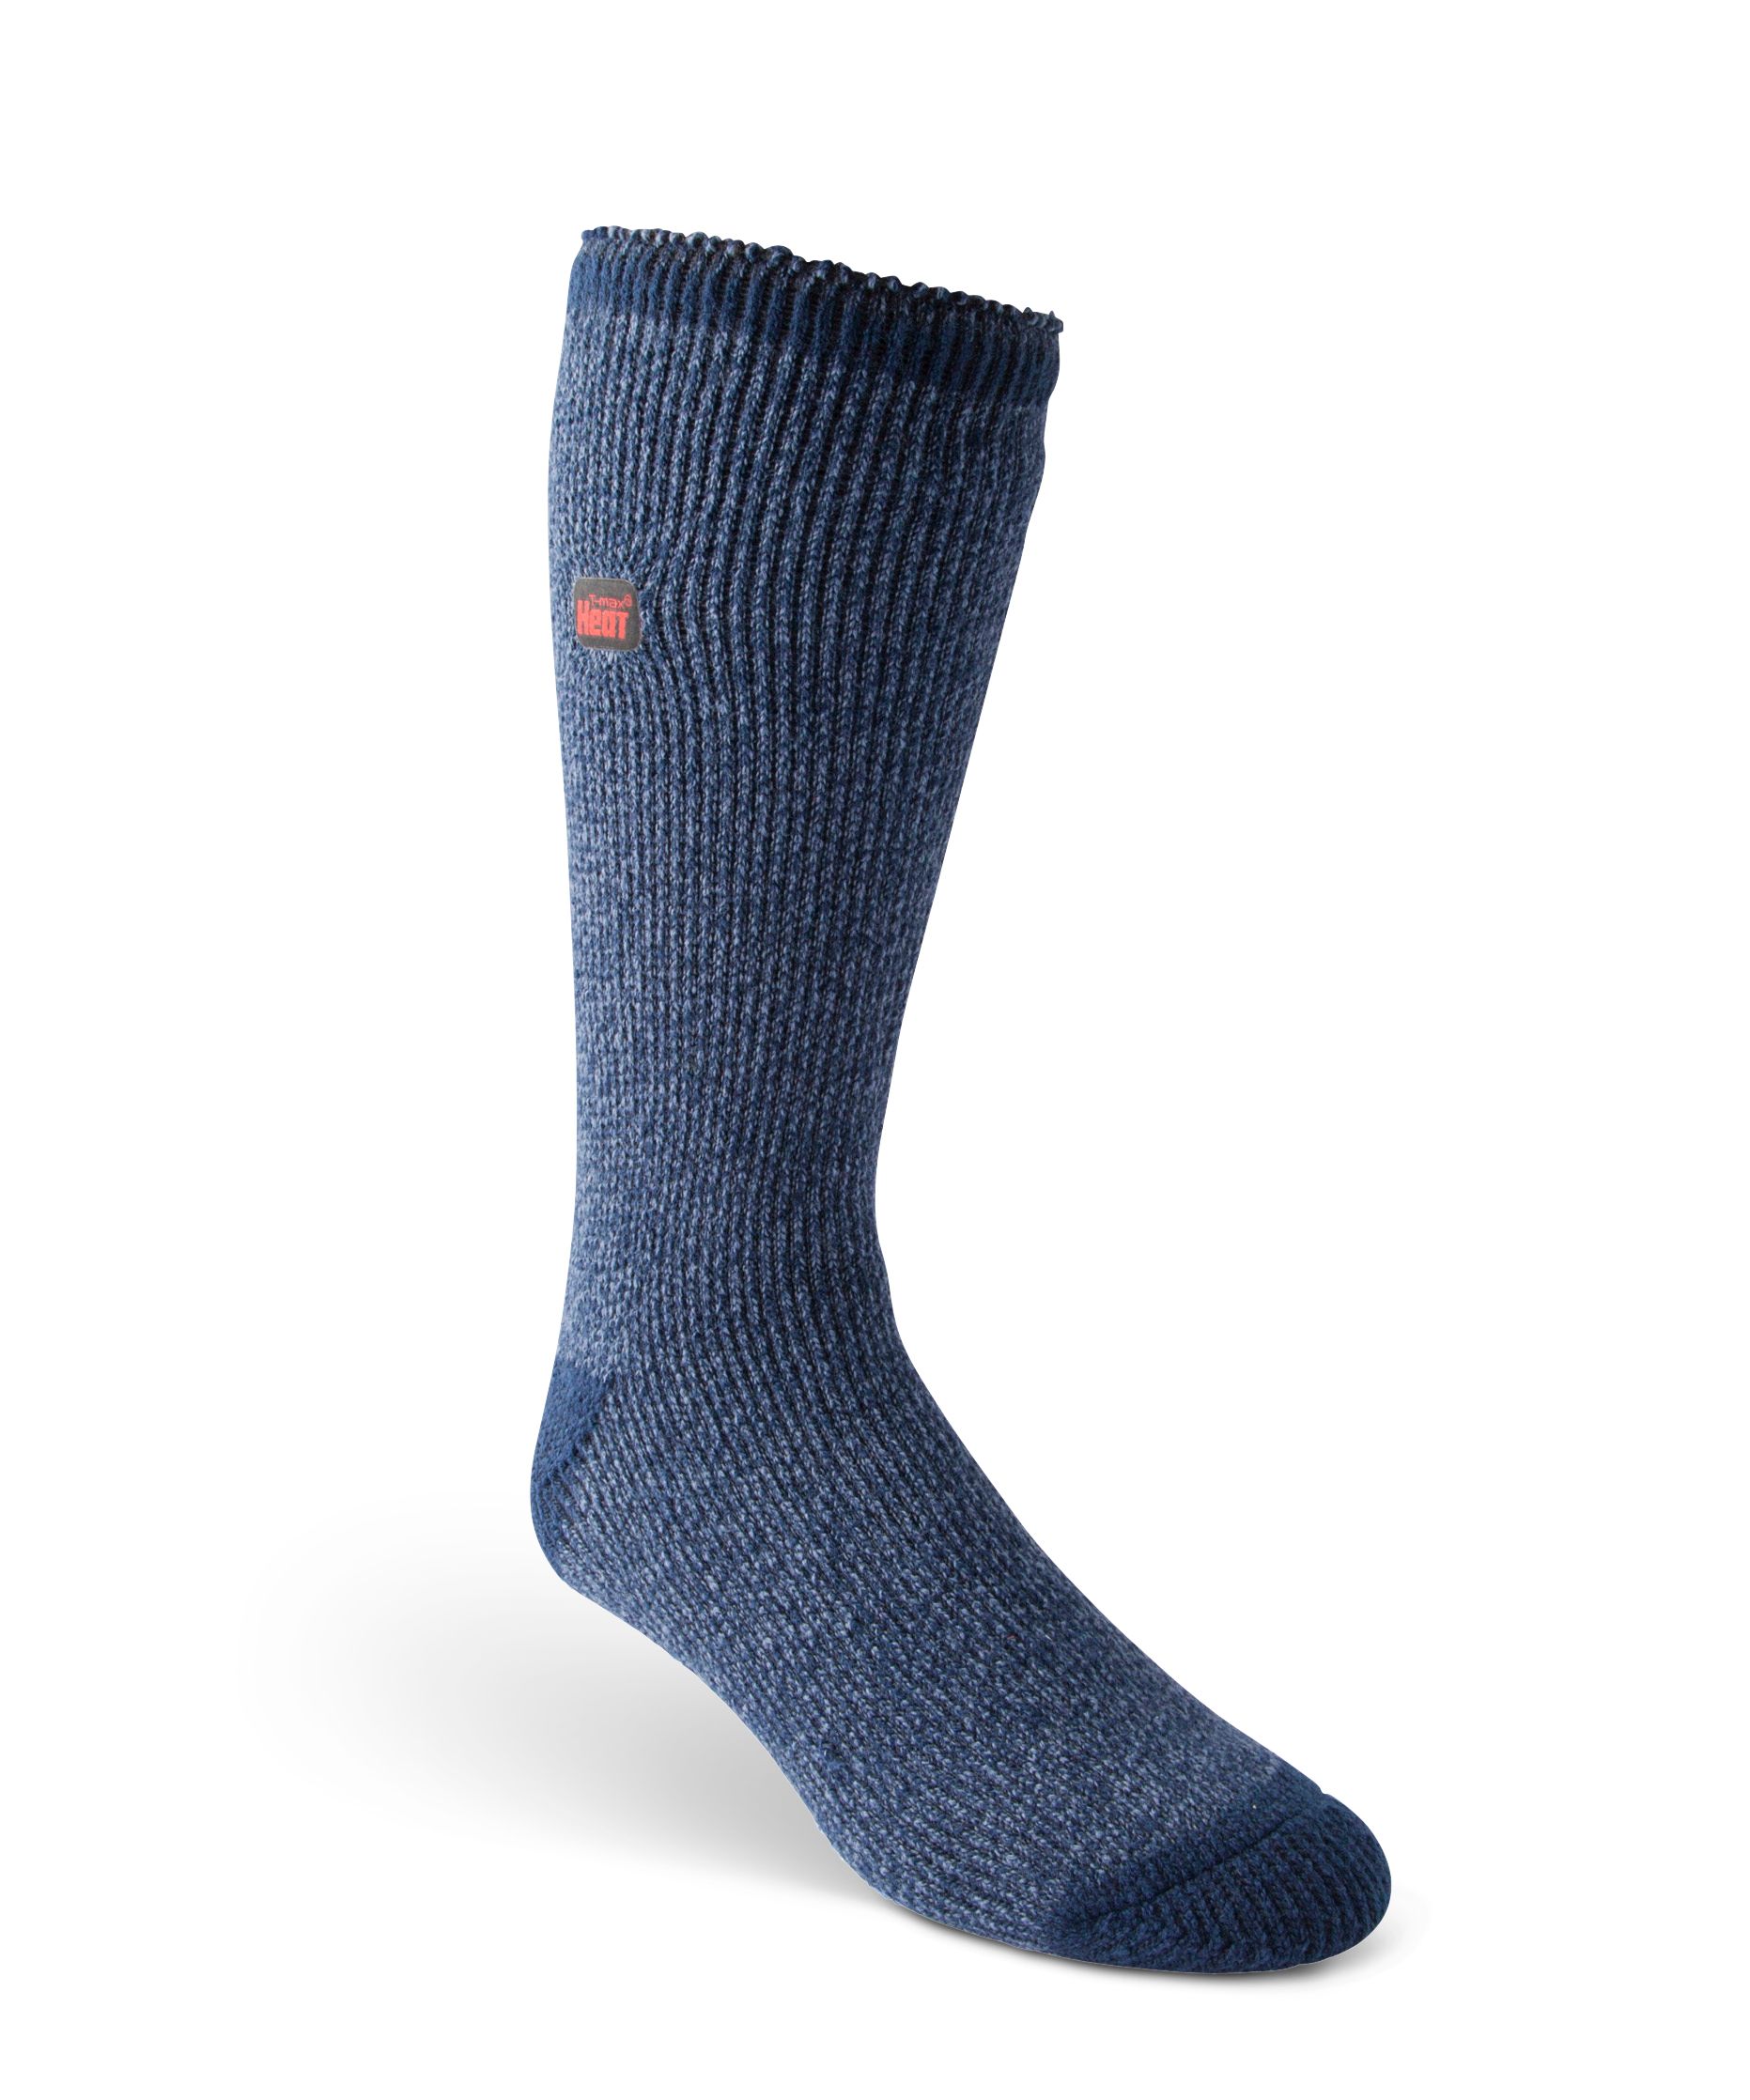 WindRiver Men's T-Max Heat Anti-Skid Socks